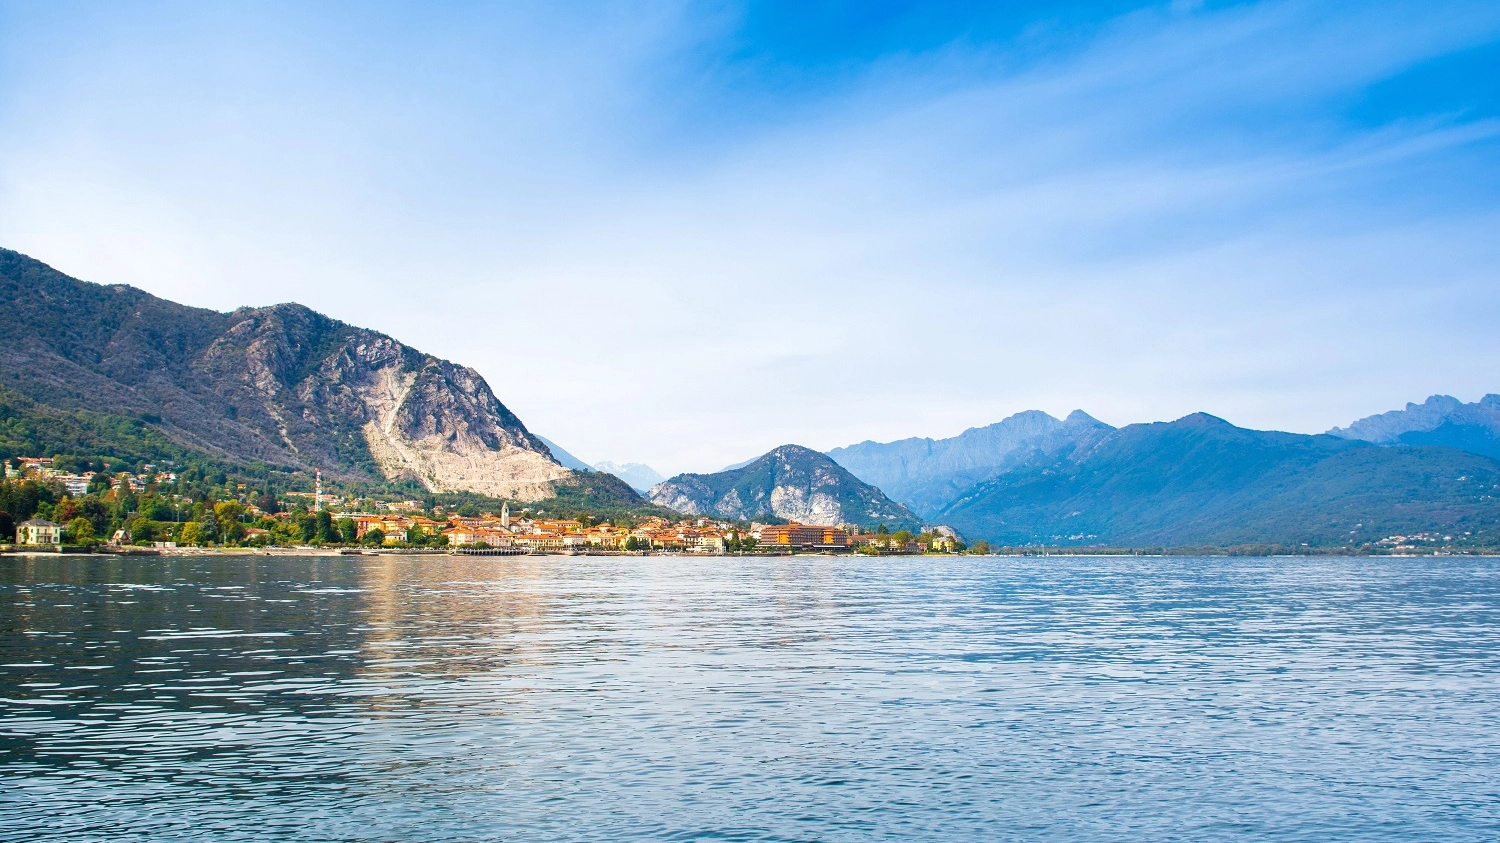 La regione racconta l’eleganza dell’arcipelago del lago Maggiore e presenta questa meraviglia al pubblico planetario dell’esposizione universale